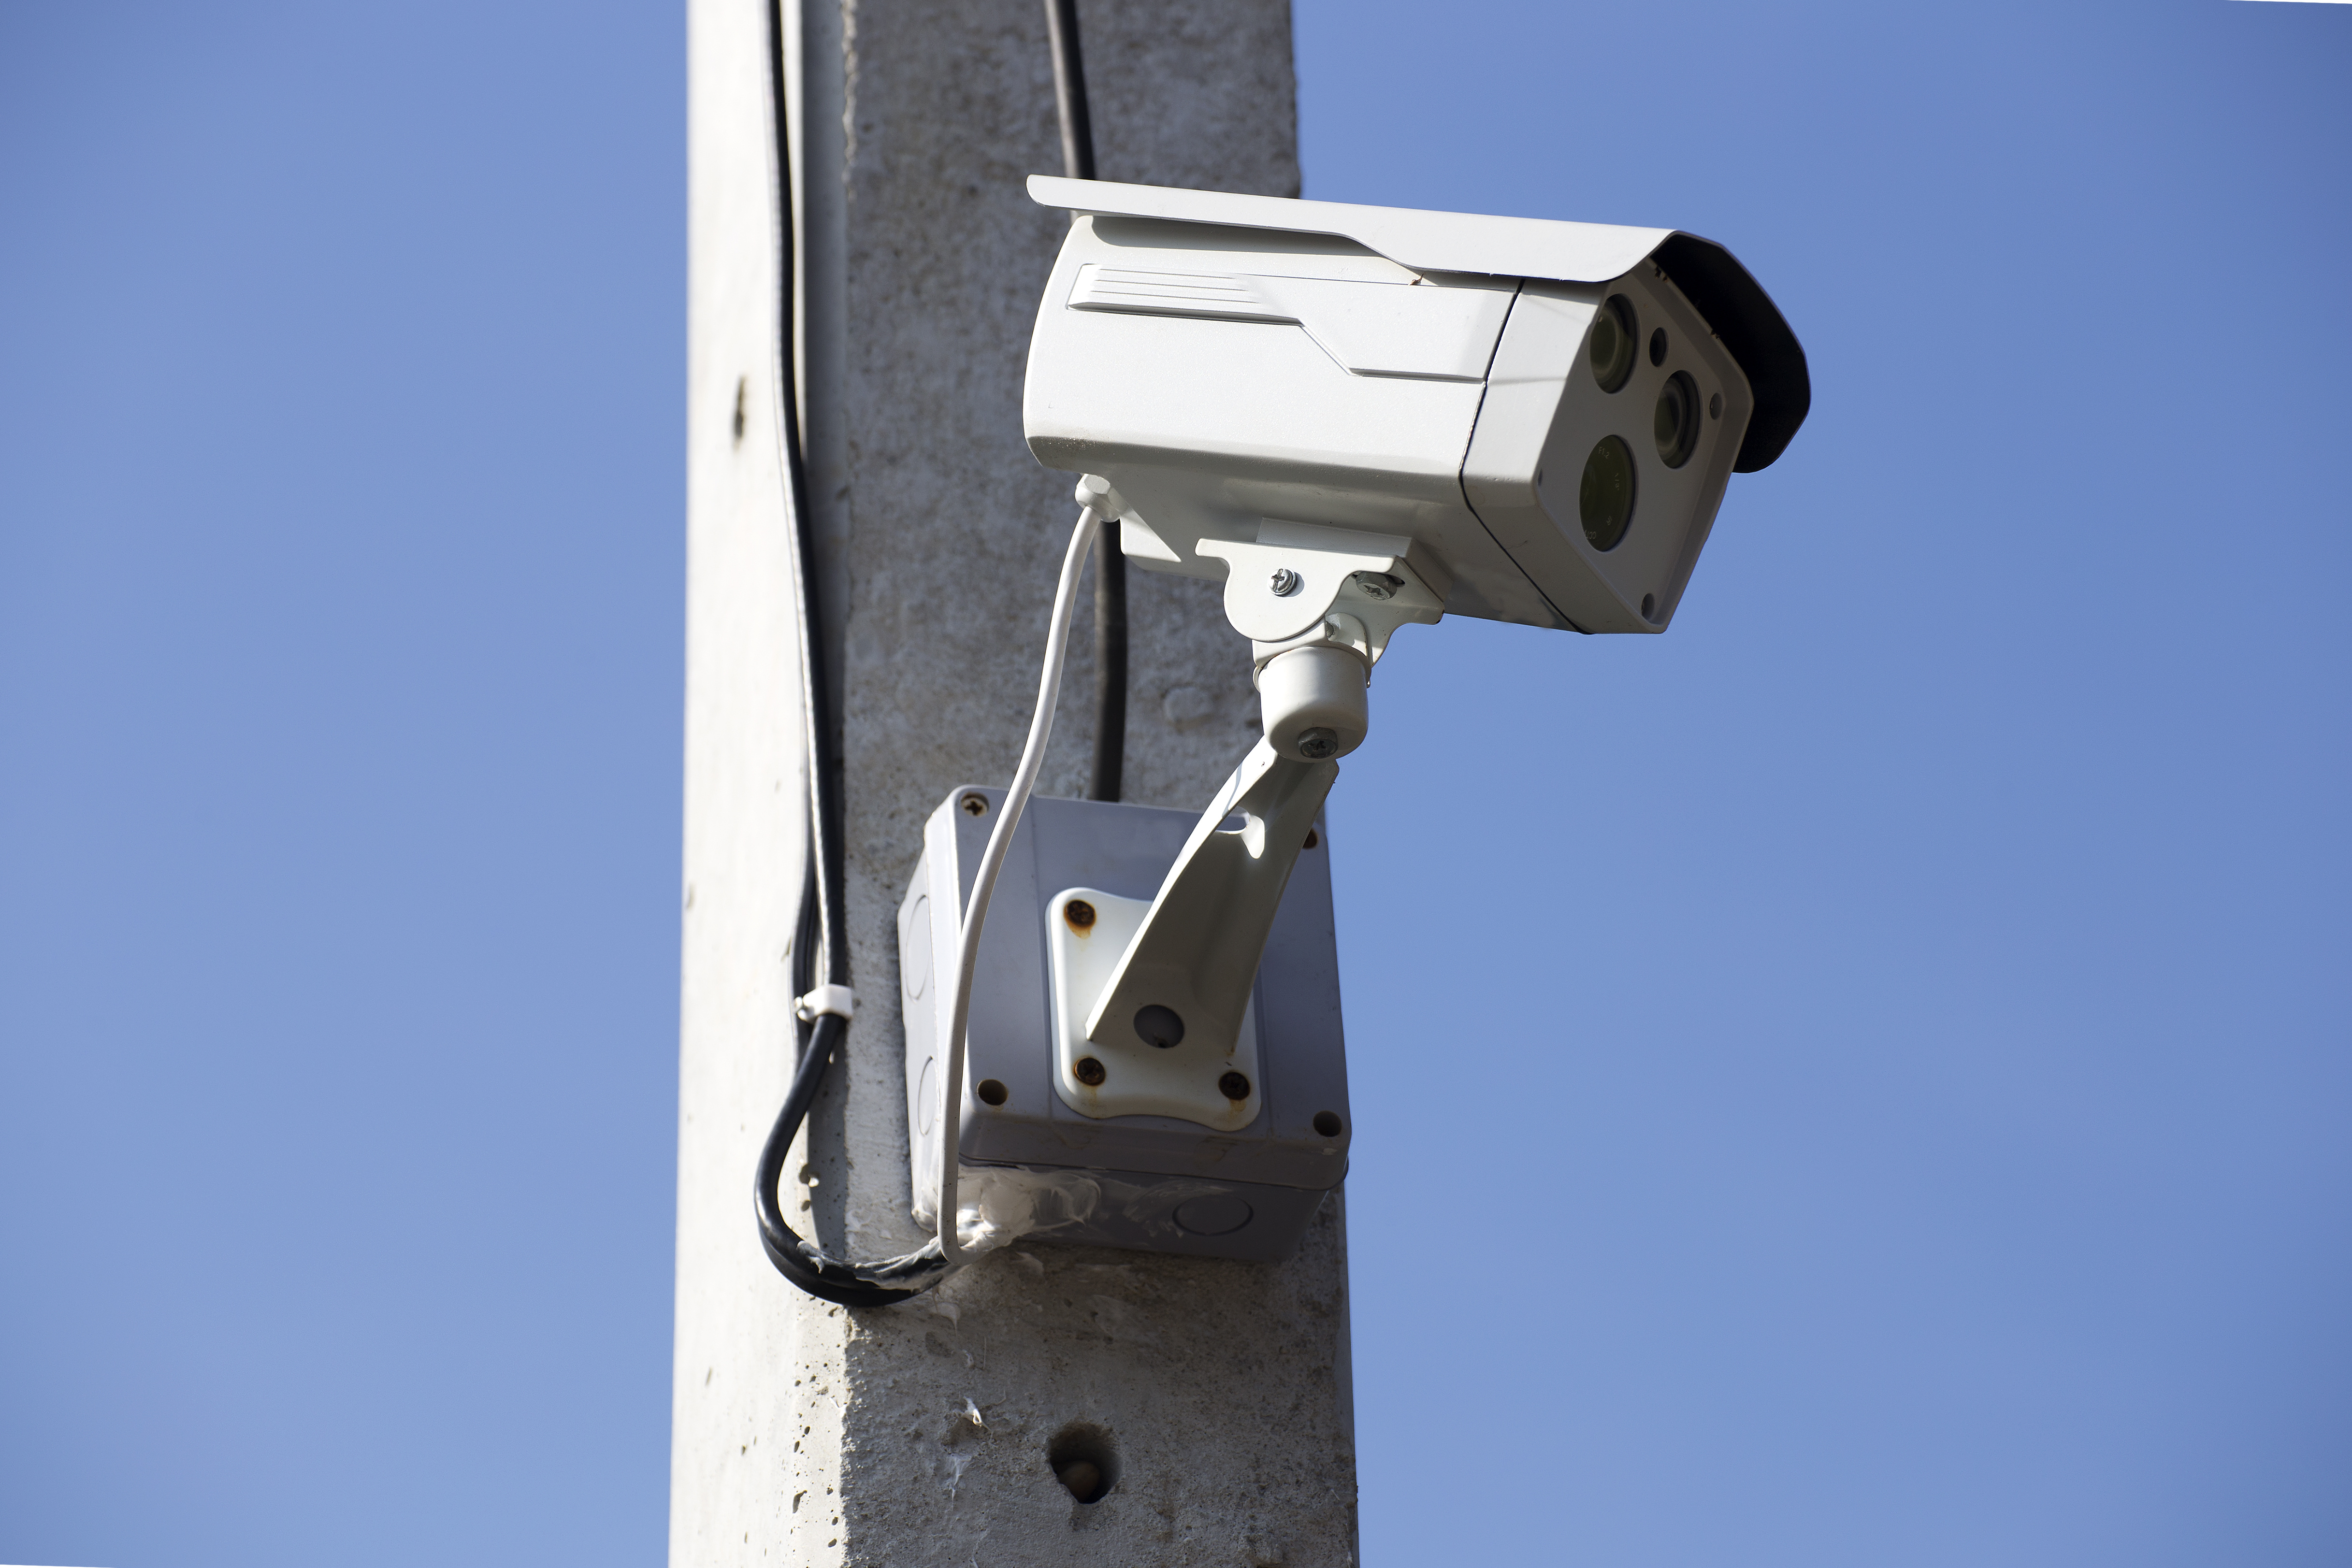 Panneaux vidéoprotection / vidéosurveillance conformes au RGPD - Modèle CNIL